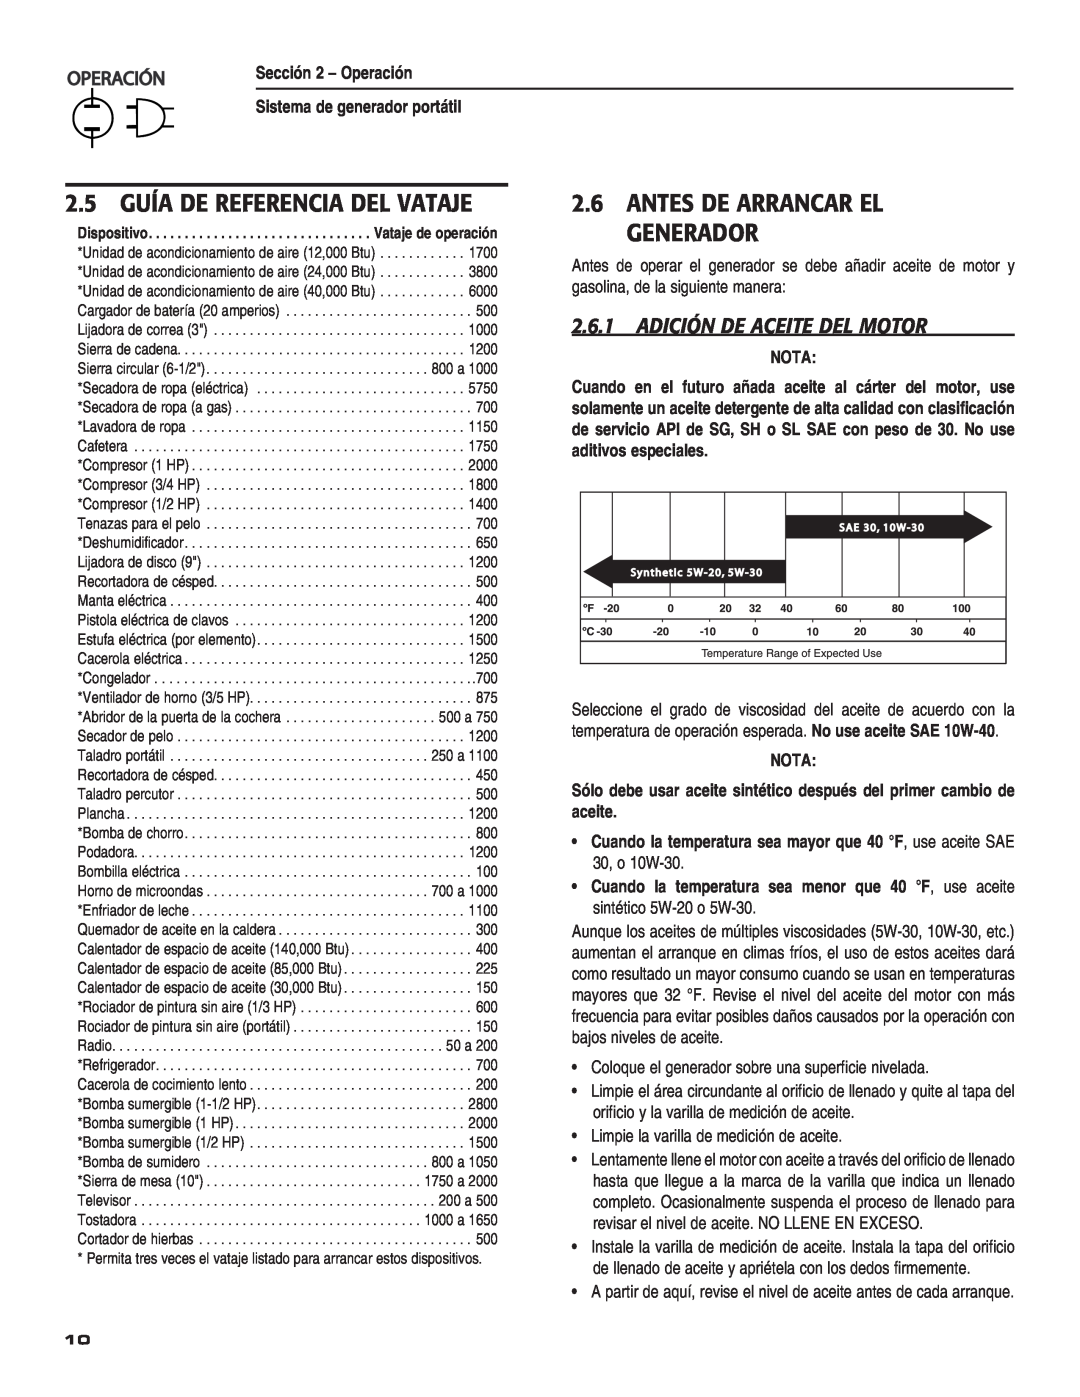 Guardian Technologies 004583-0 owner manual 2.5 GUÍA DE REFERENCIA DEL VATAJE, Antes De Arrancar El Generador, 0%2!#œ, Nota 